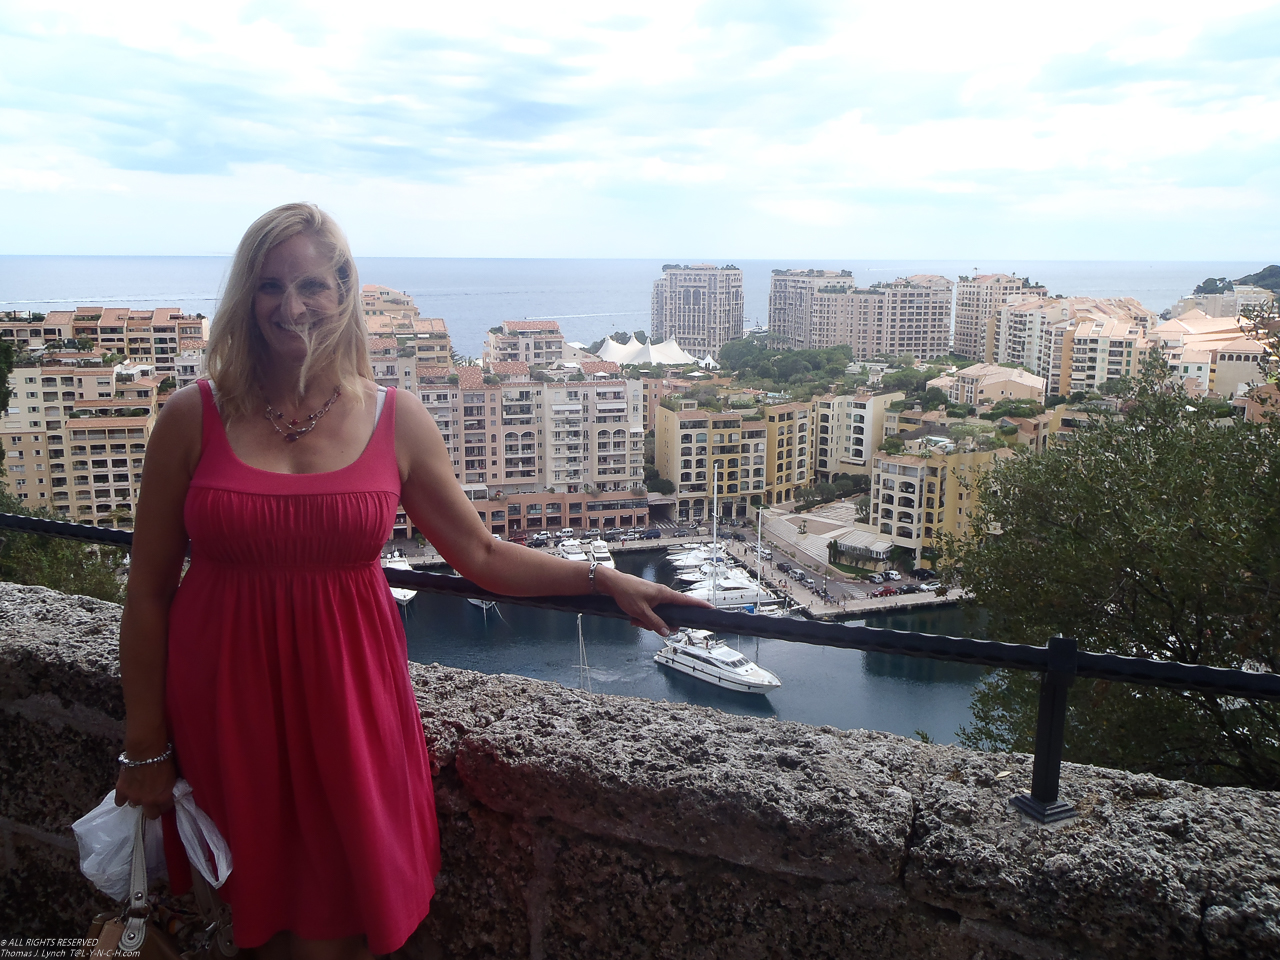 Monaco near the Palace  ~~  OLYMPUS DIGITAL CAMERA